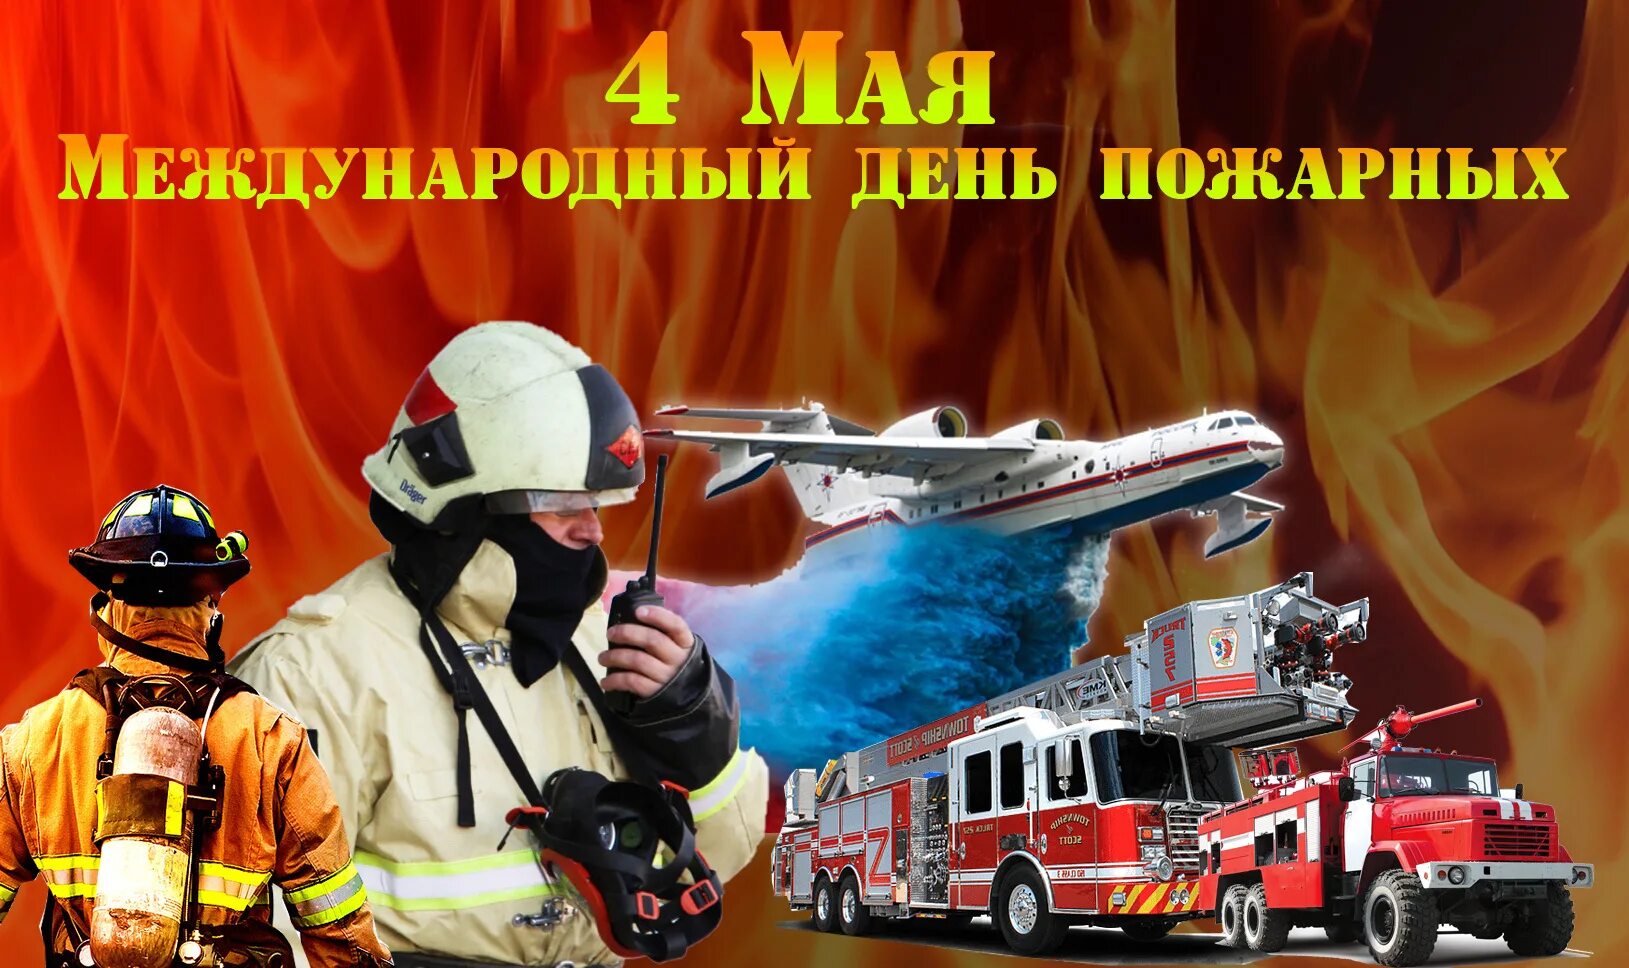 Международный день пожарных. Международный день пожарных поздравления. Международный день пожарных 4 мая. С днем пожарной охраны.